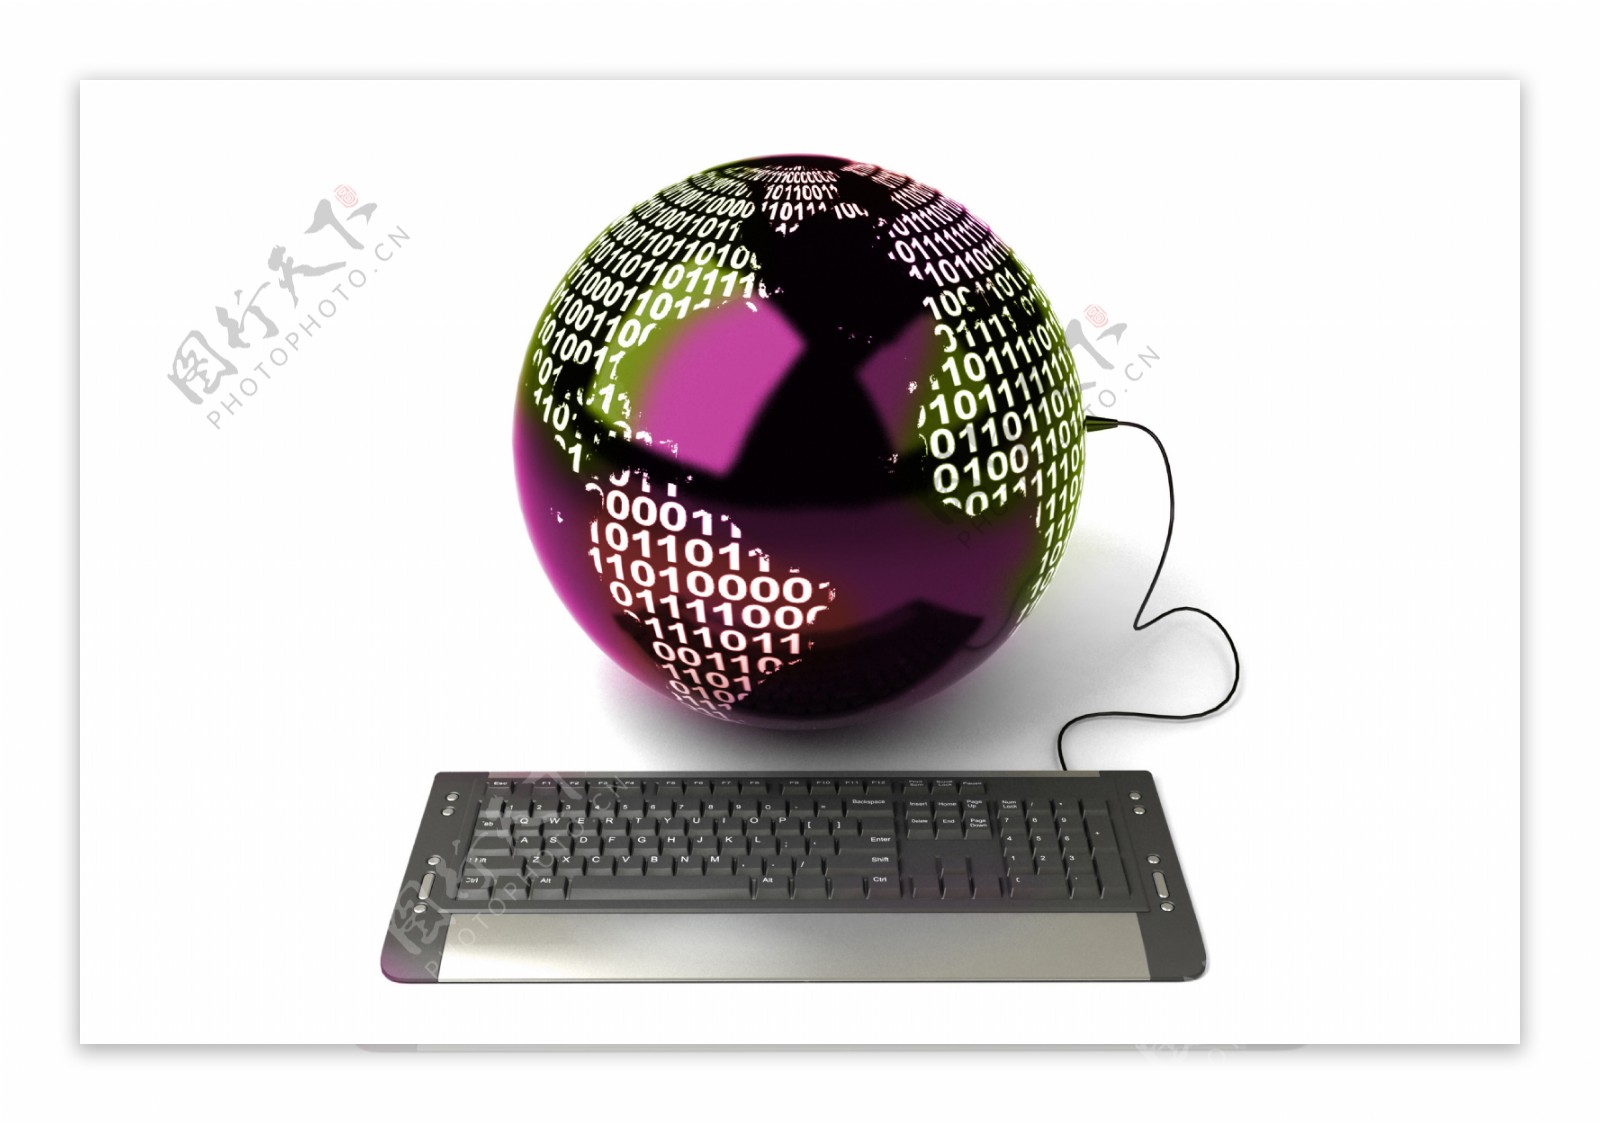 紫色球体和键盘图片